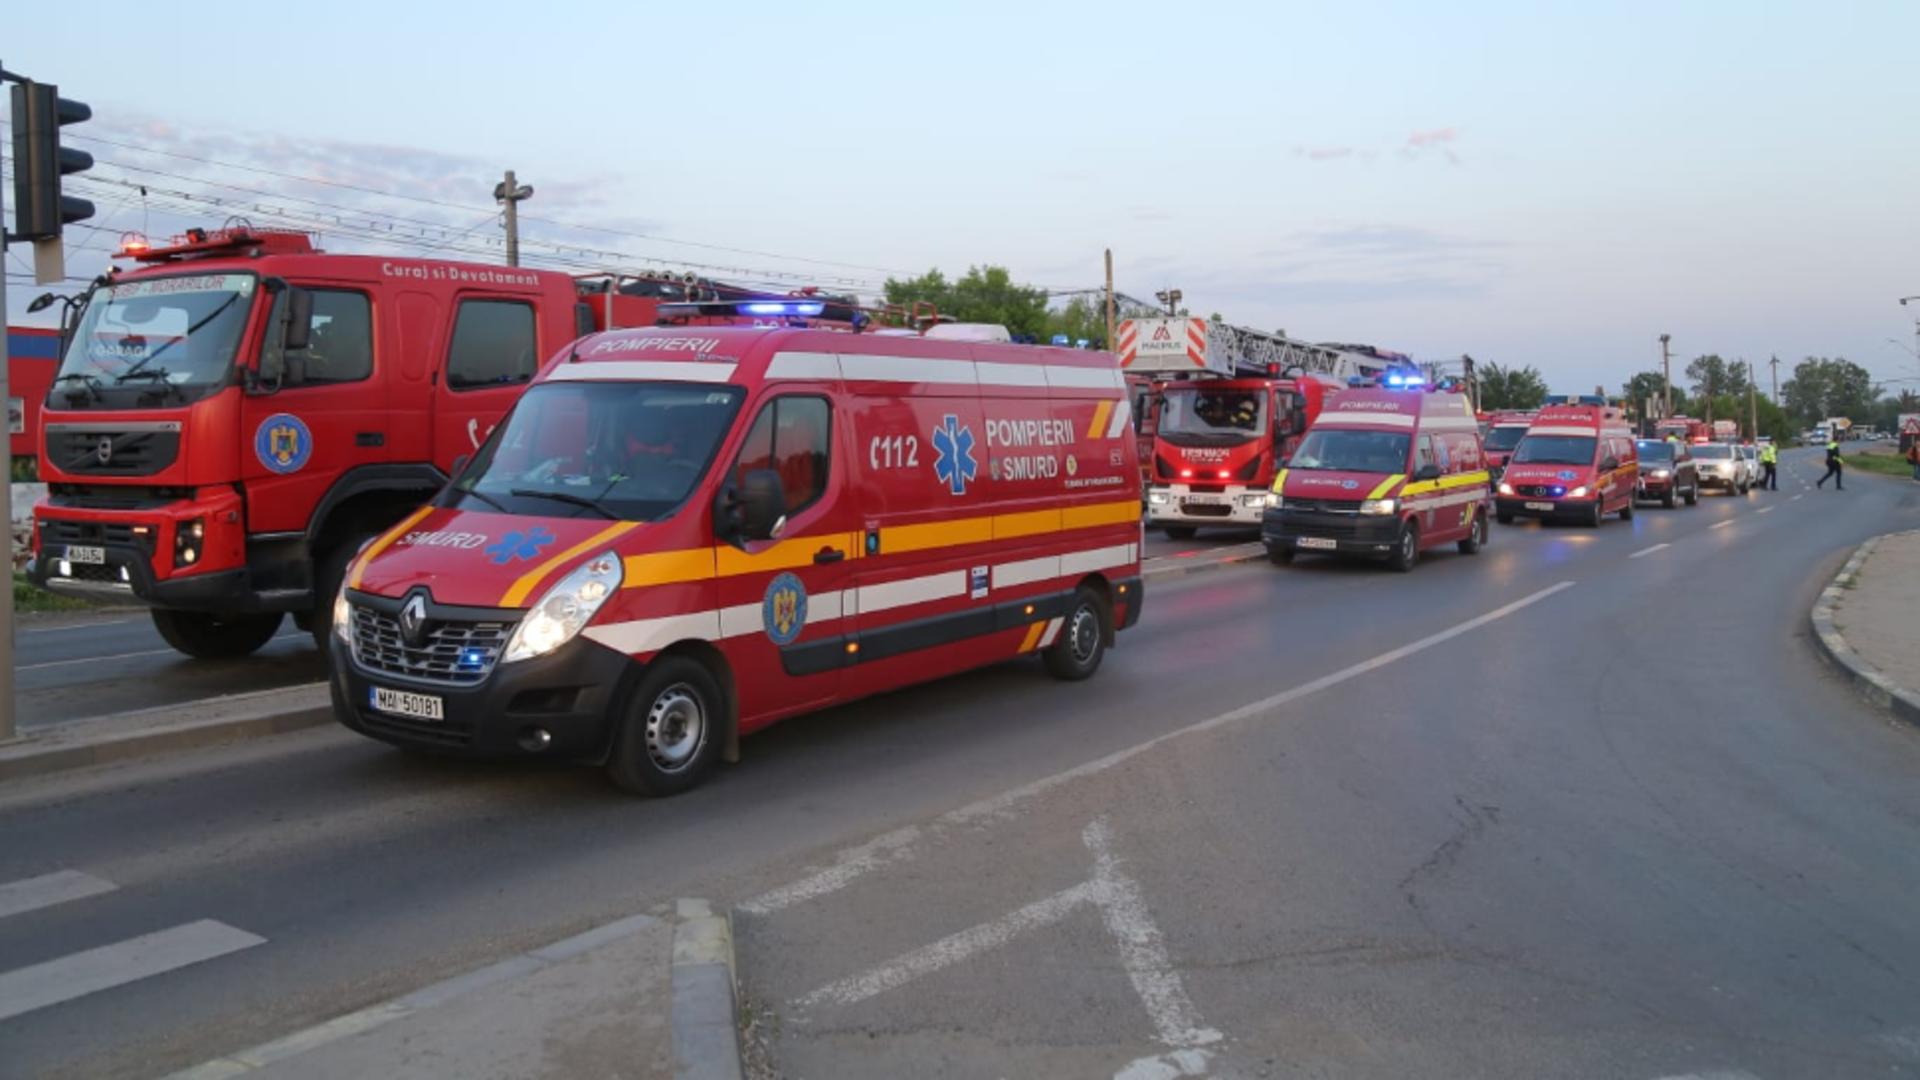 O mașină a explodat când era alimentată cu GPL, în Pantelimon: Angajatul benzinăriei A MURIT, șoferul, rănit, dus la spital - Foto&Video